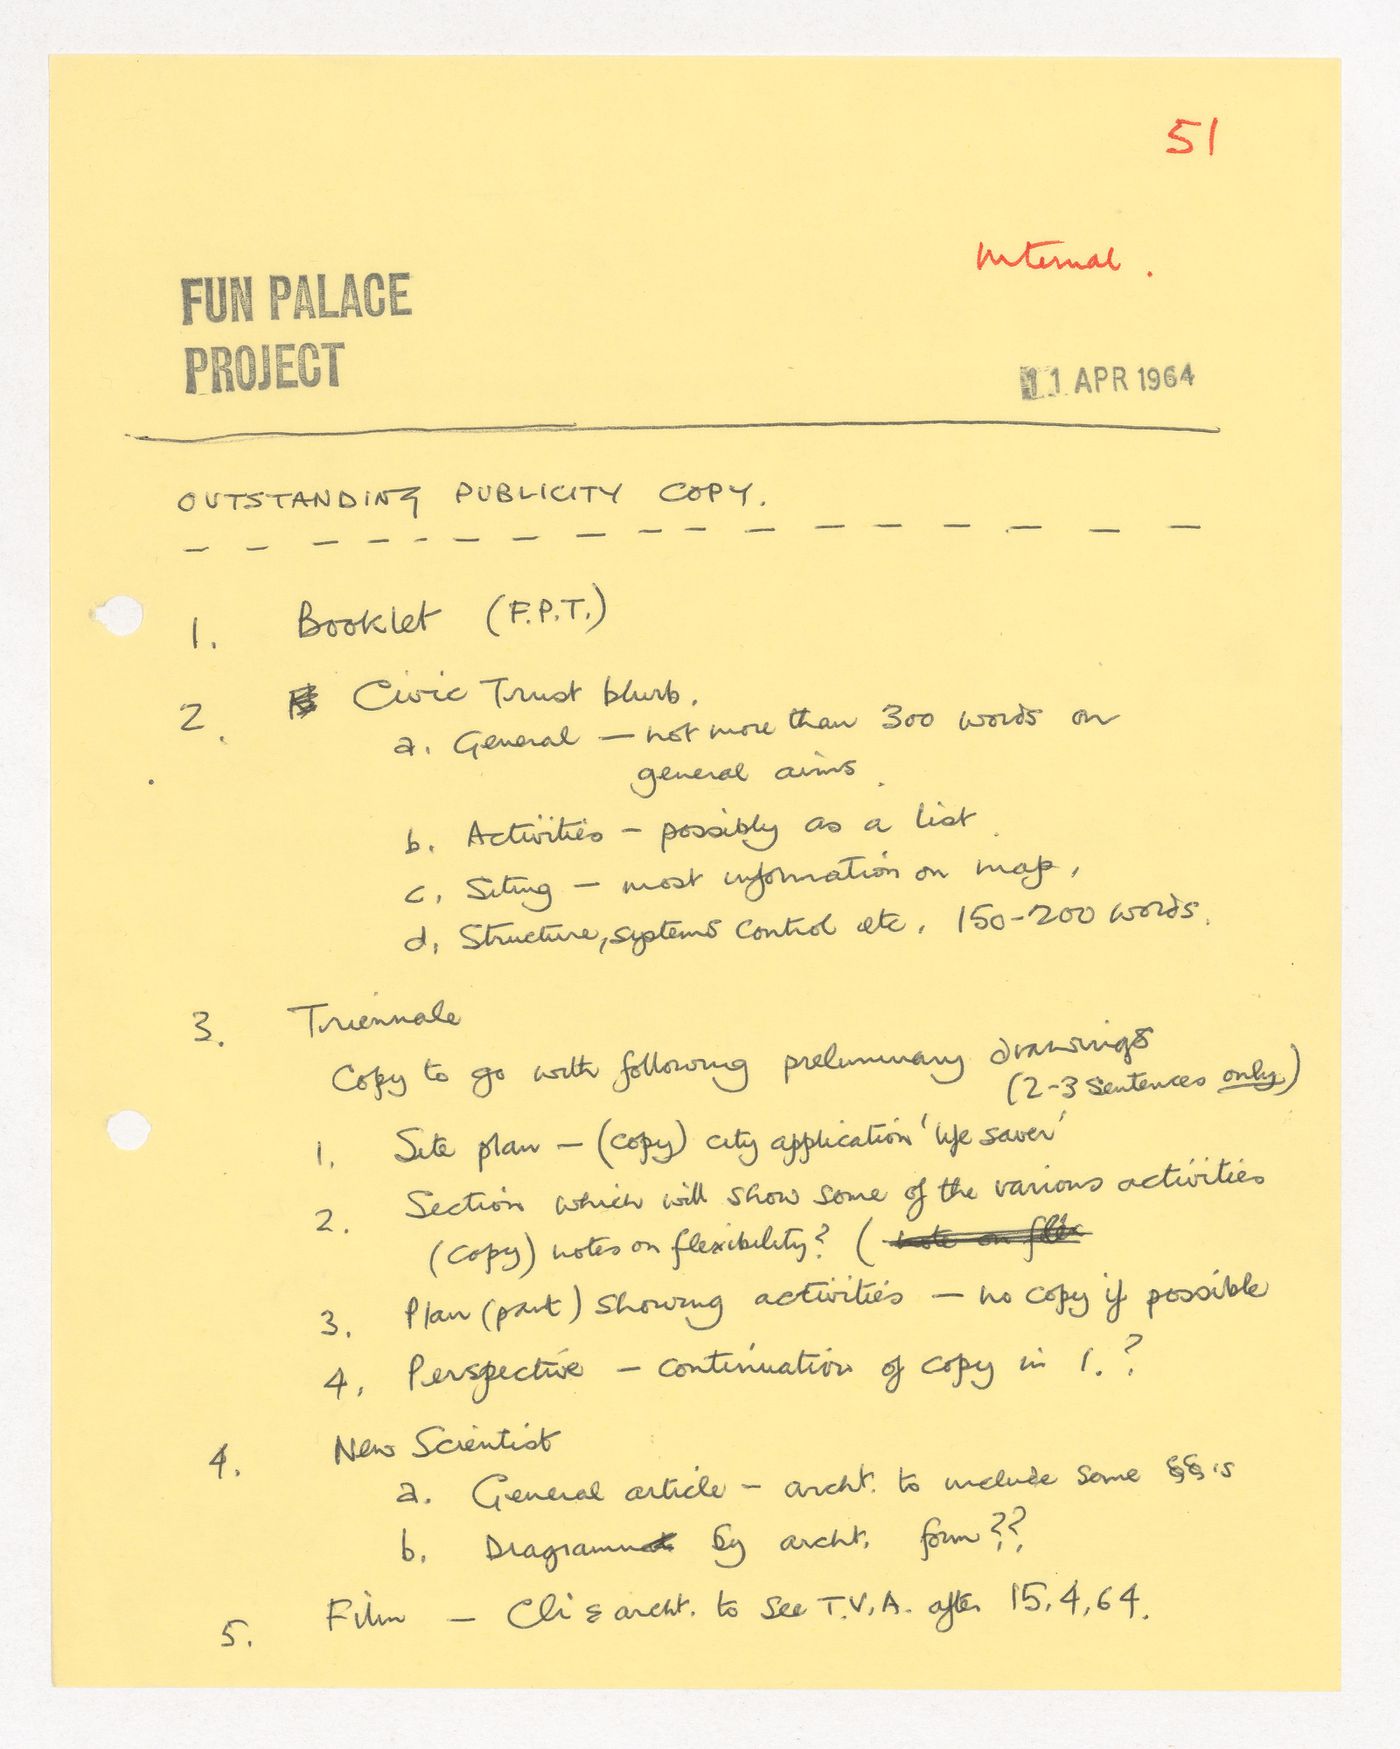 Notes regarding the Fun Palace Project